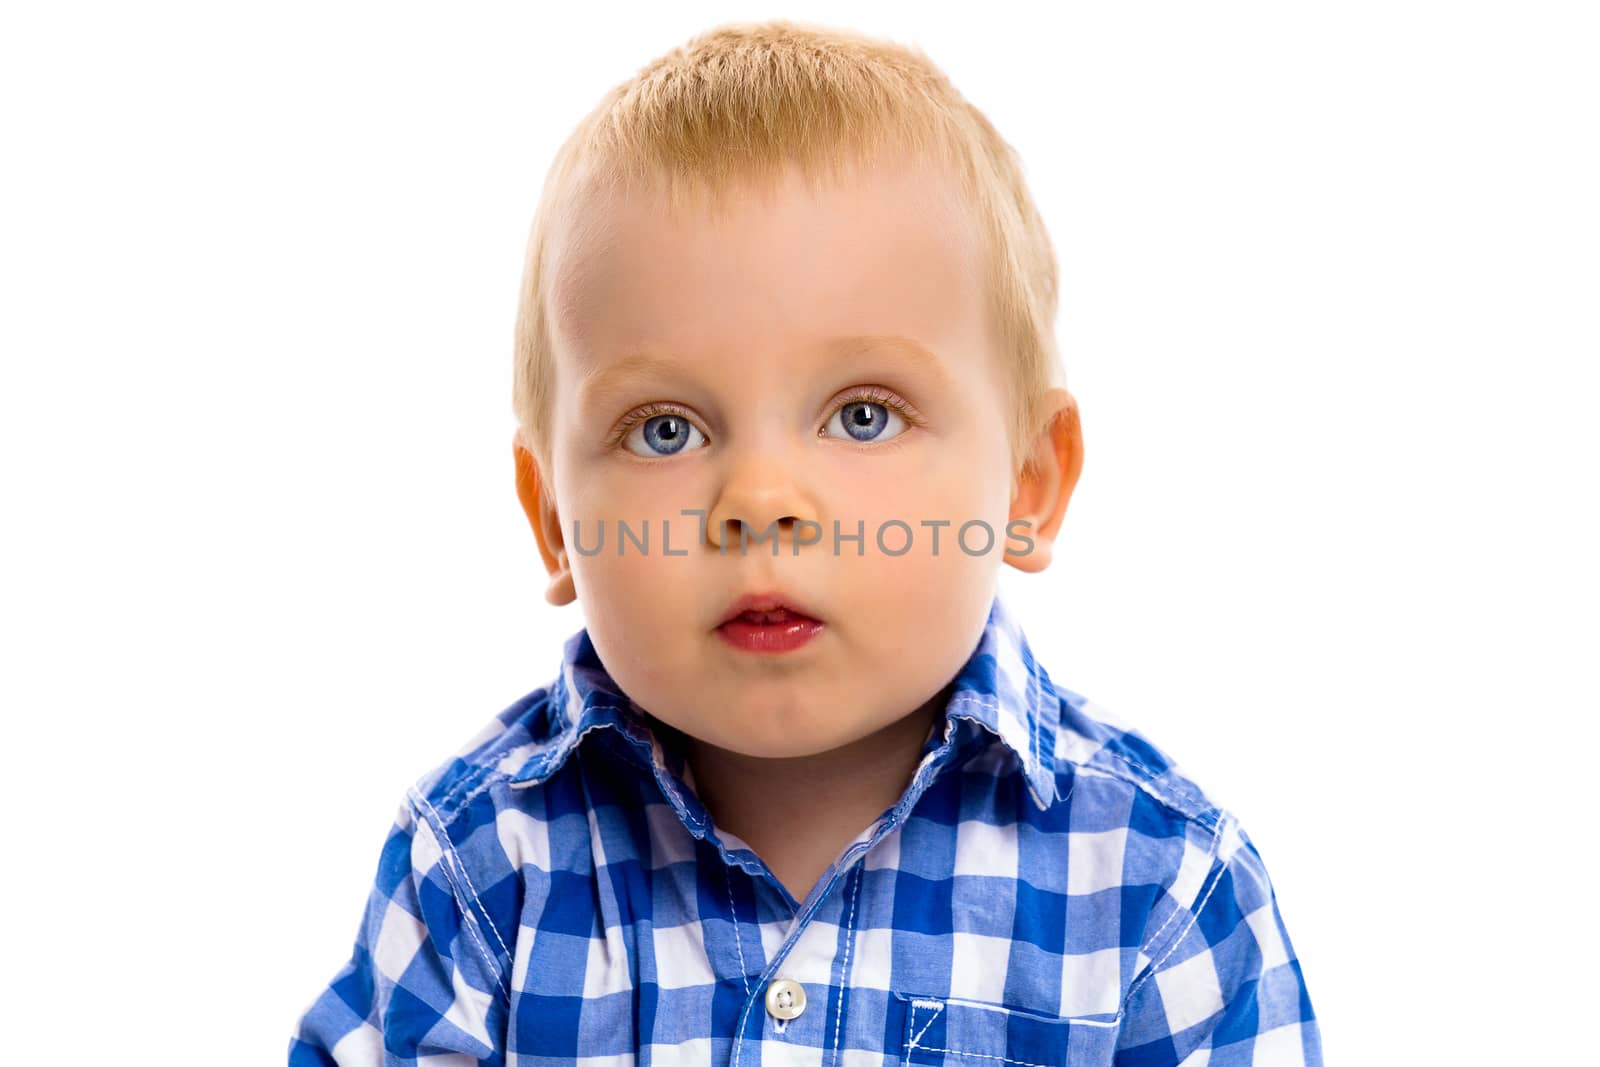 blue-eyed baby boy in a plaid shirt